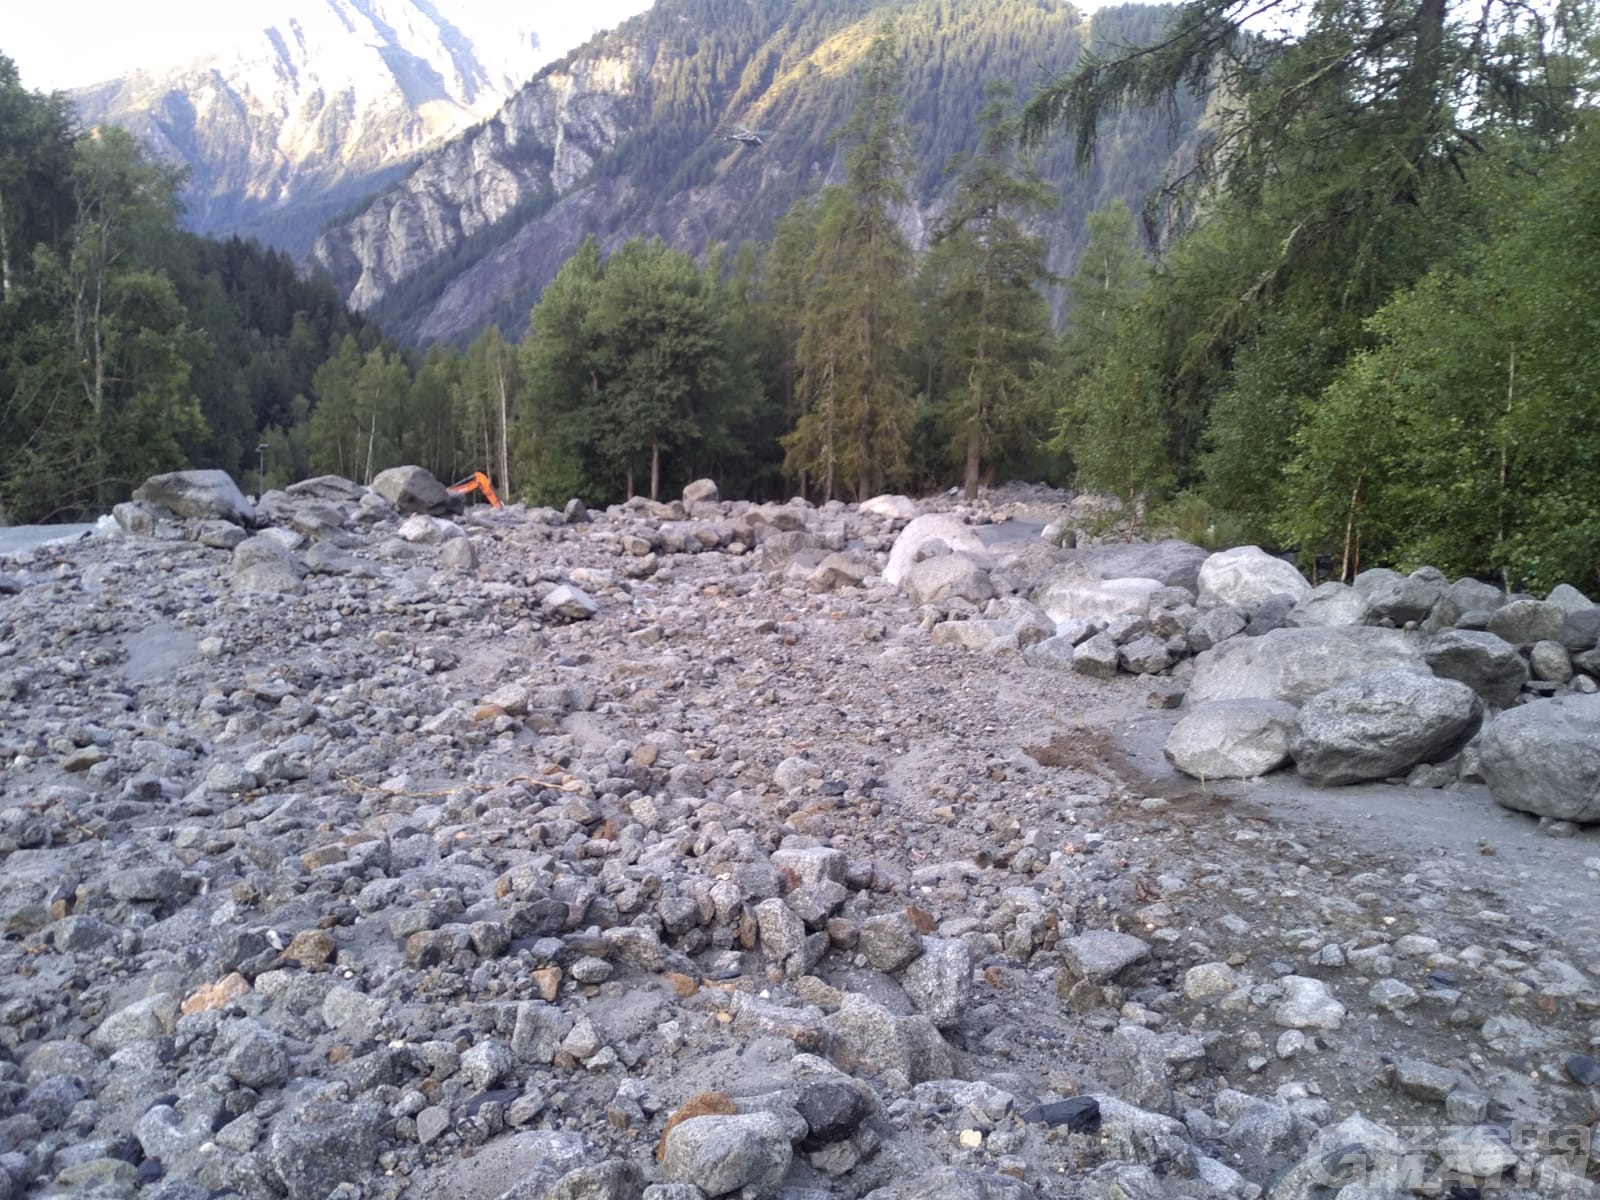 Frana in Val Ferret: serviranno almeno 2 giorni per il ripristino dell’acquedotto